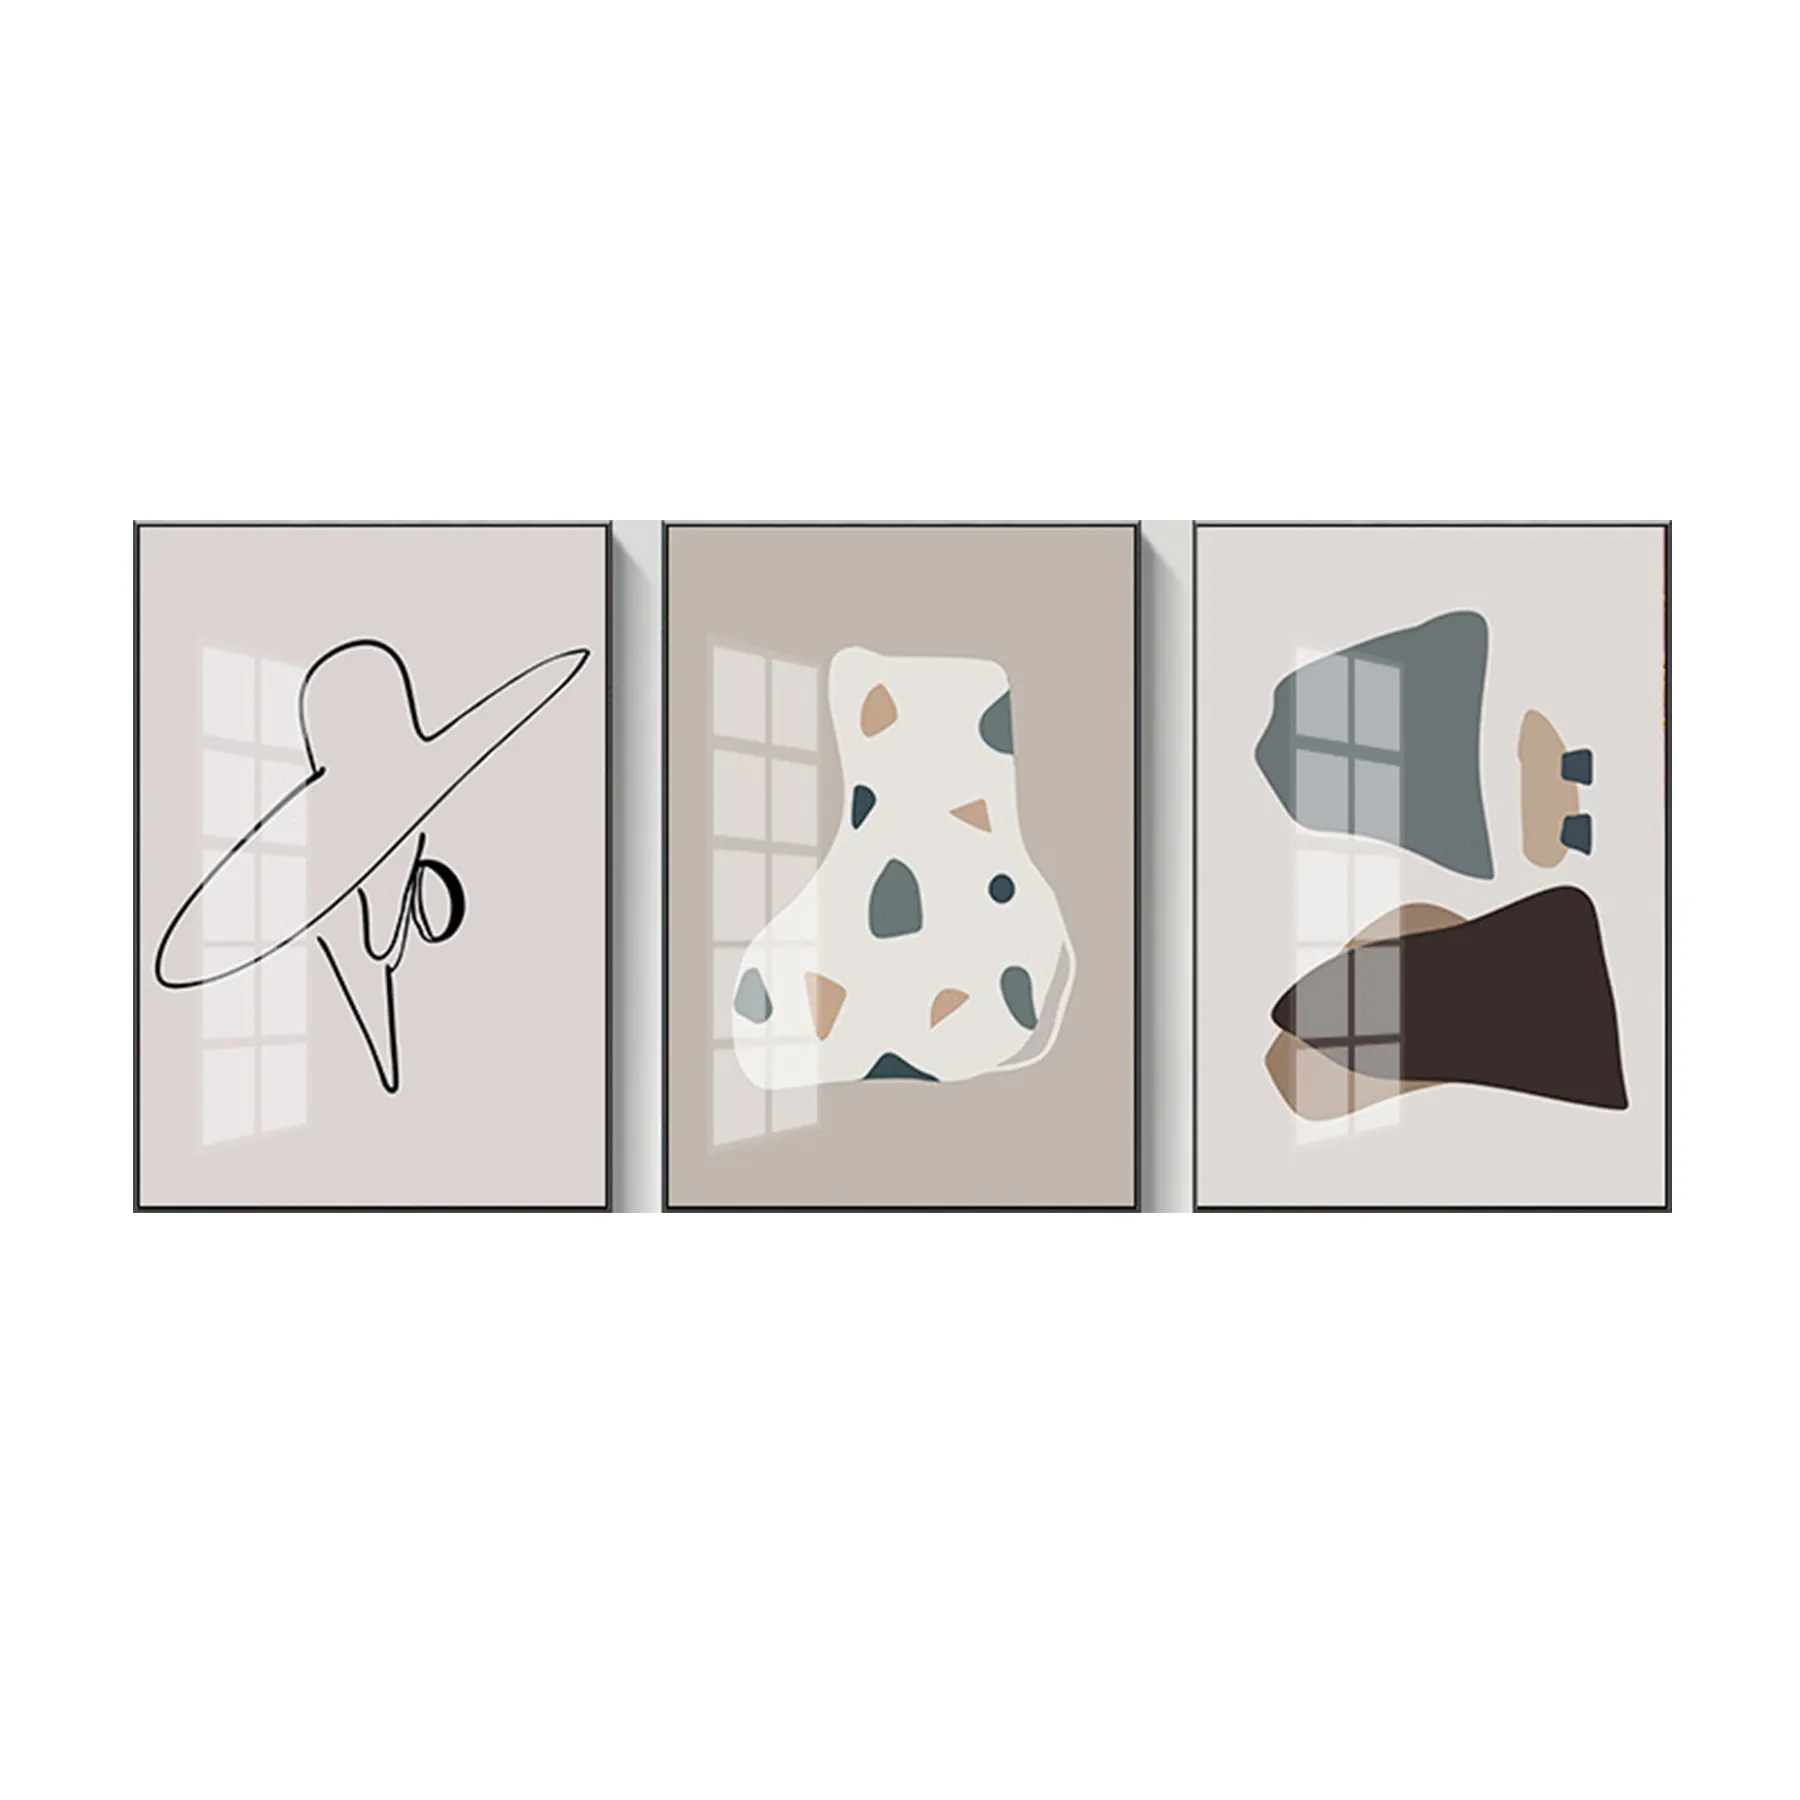 Vereinfachte nordische abstrakte geometrische Linien zwischen dem Figuren muster des benutzer definierten Druck kerns der dekorativen Malerei des Triptychons